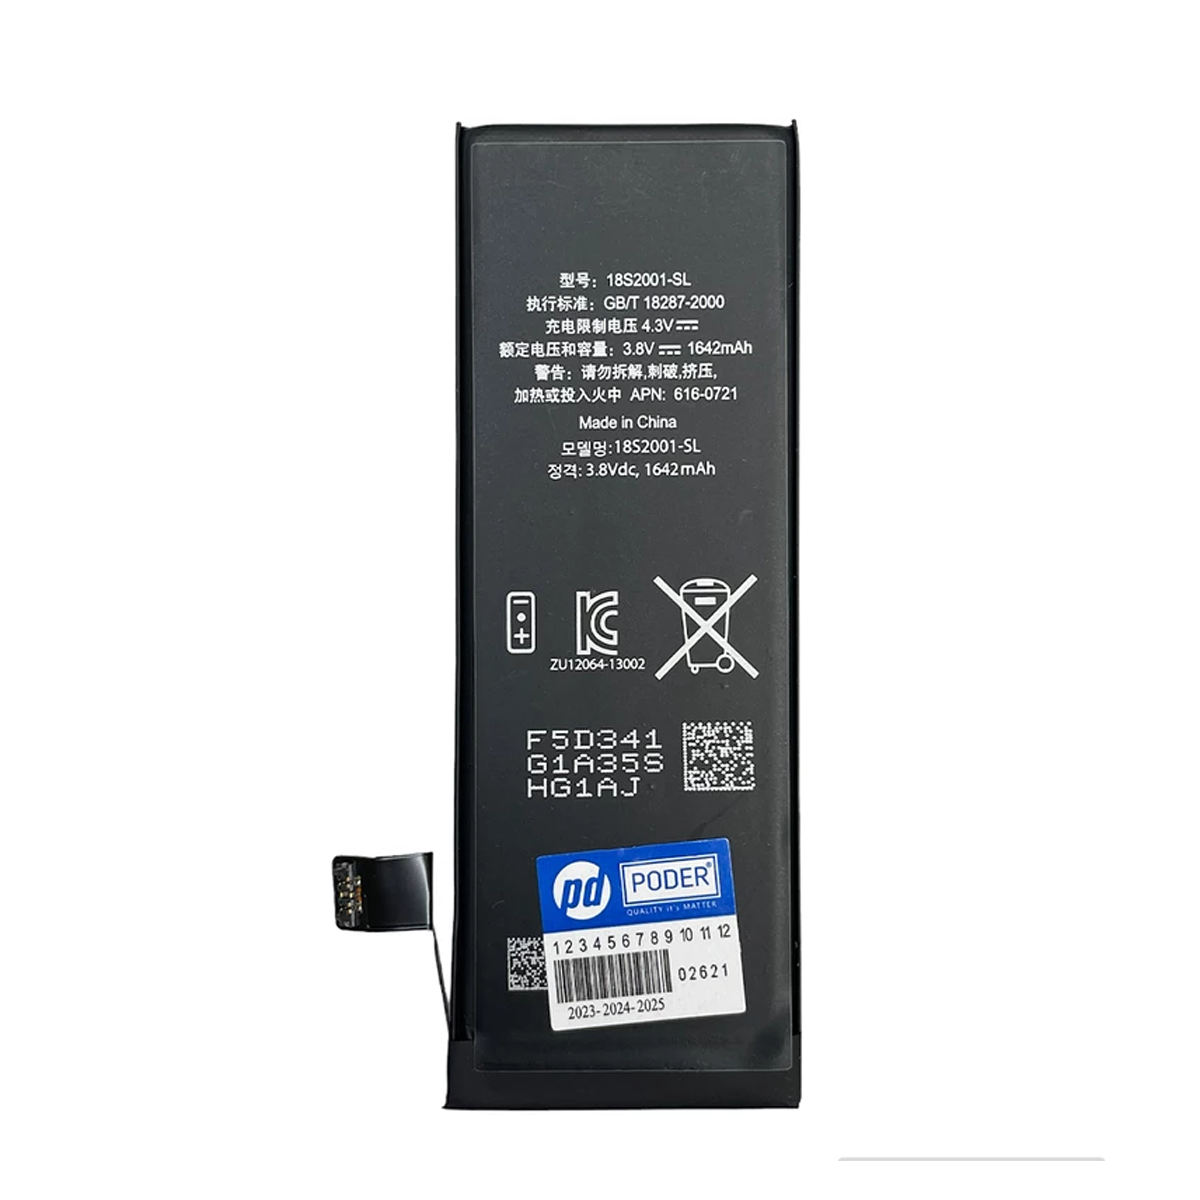 باتری موبایل پودر مدل 6160721 مناسب برای گوشی موبایل اپل iPhone 5SE-small-image